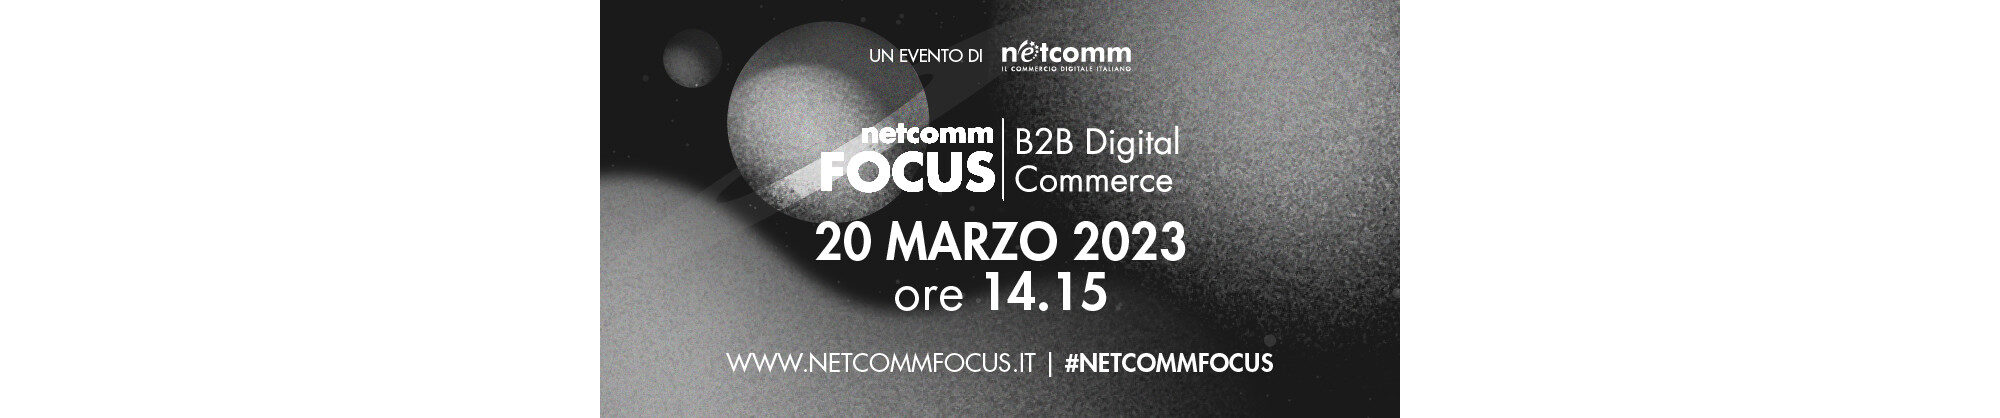 Lo Scenario e i Trend 2023 del B2B Digital Commerce in Italia, le opportunità e le sfide per le aziende